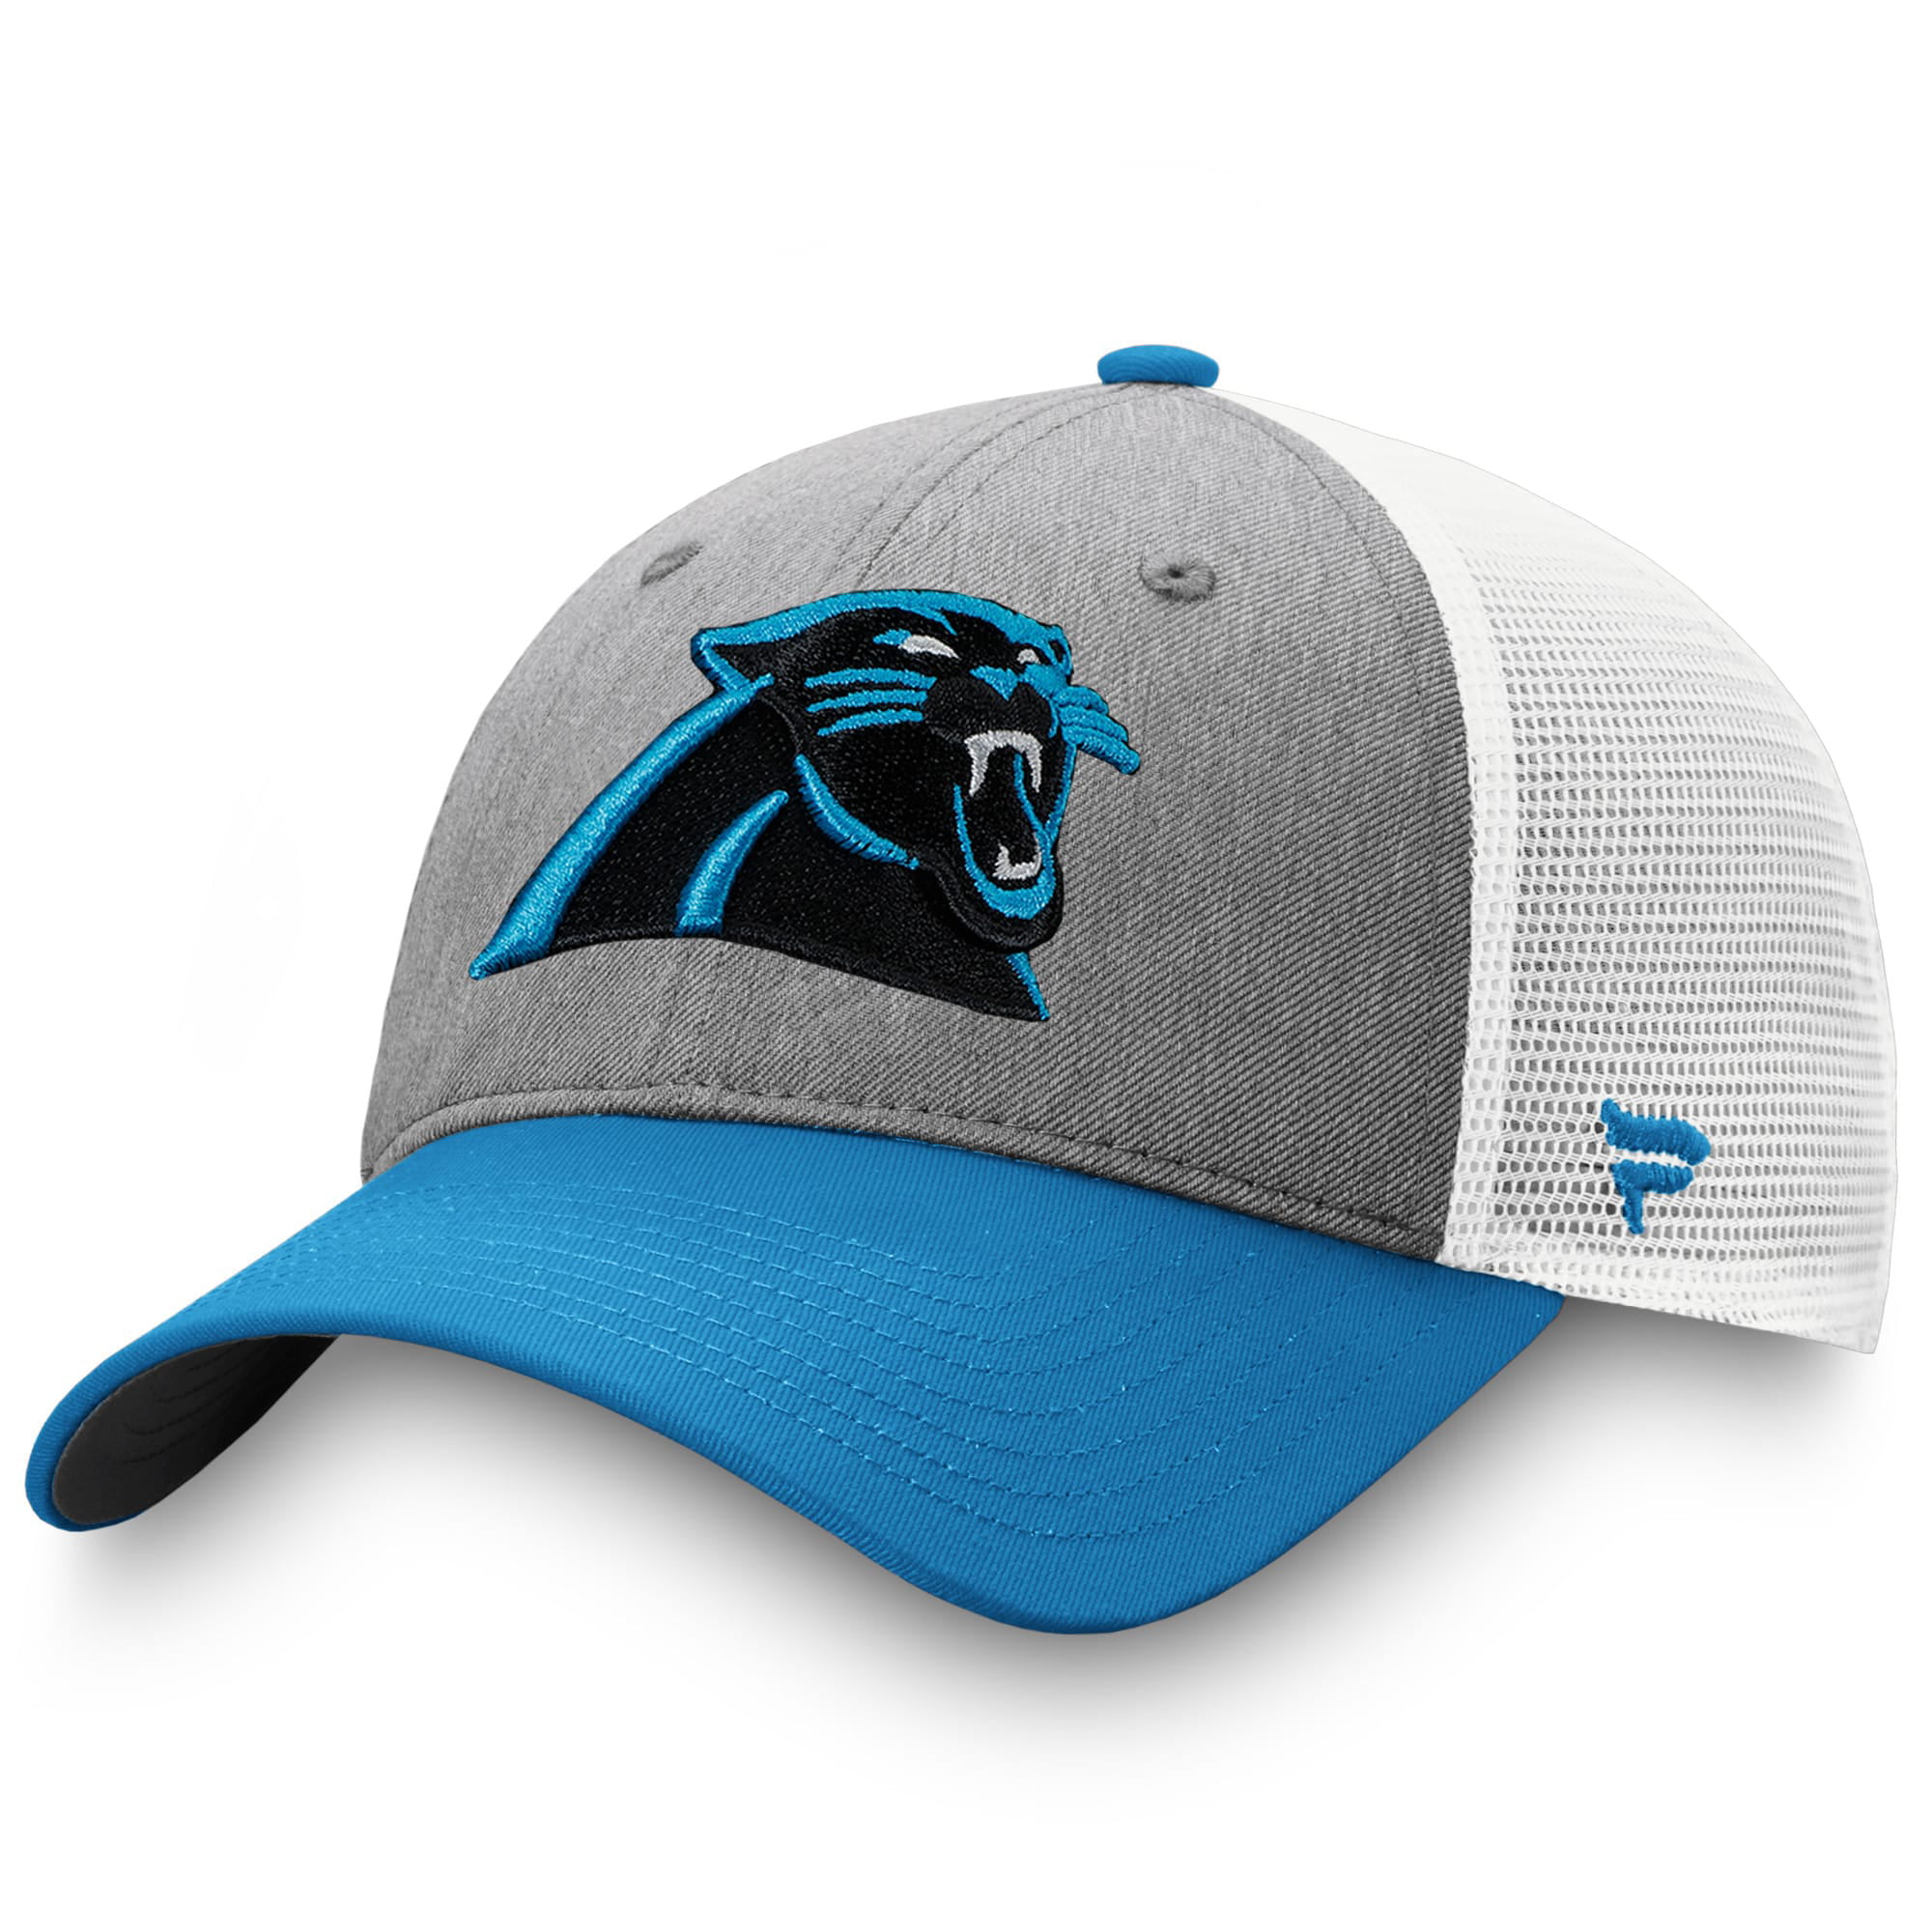 Carolina Panthers Hats - Walmart.com